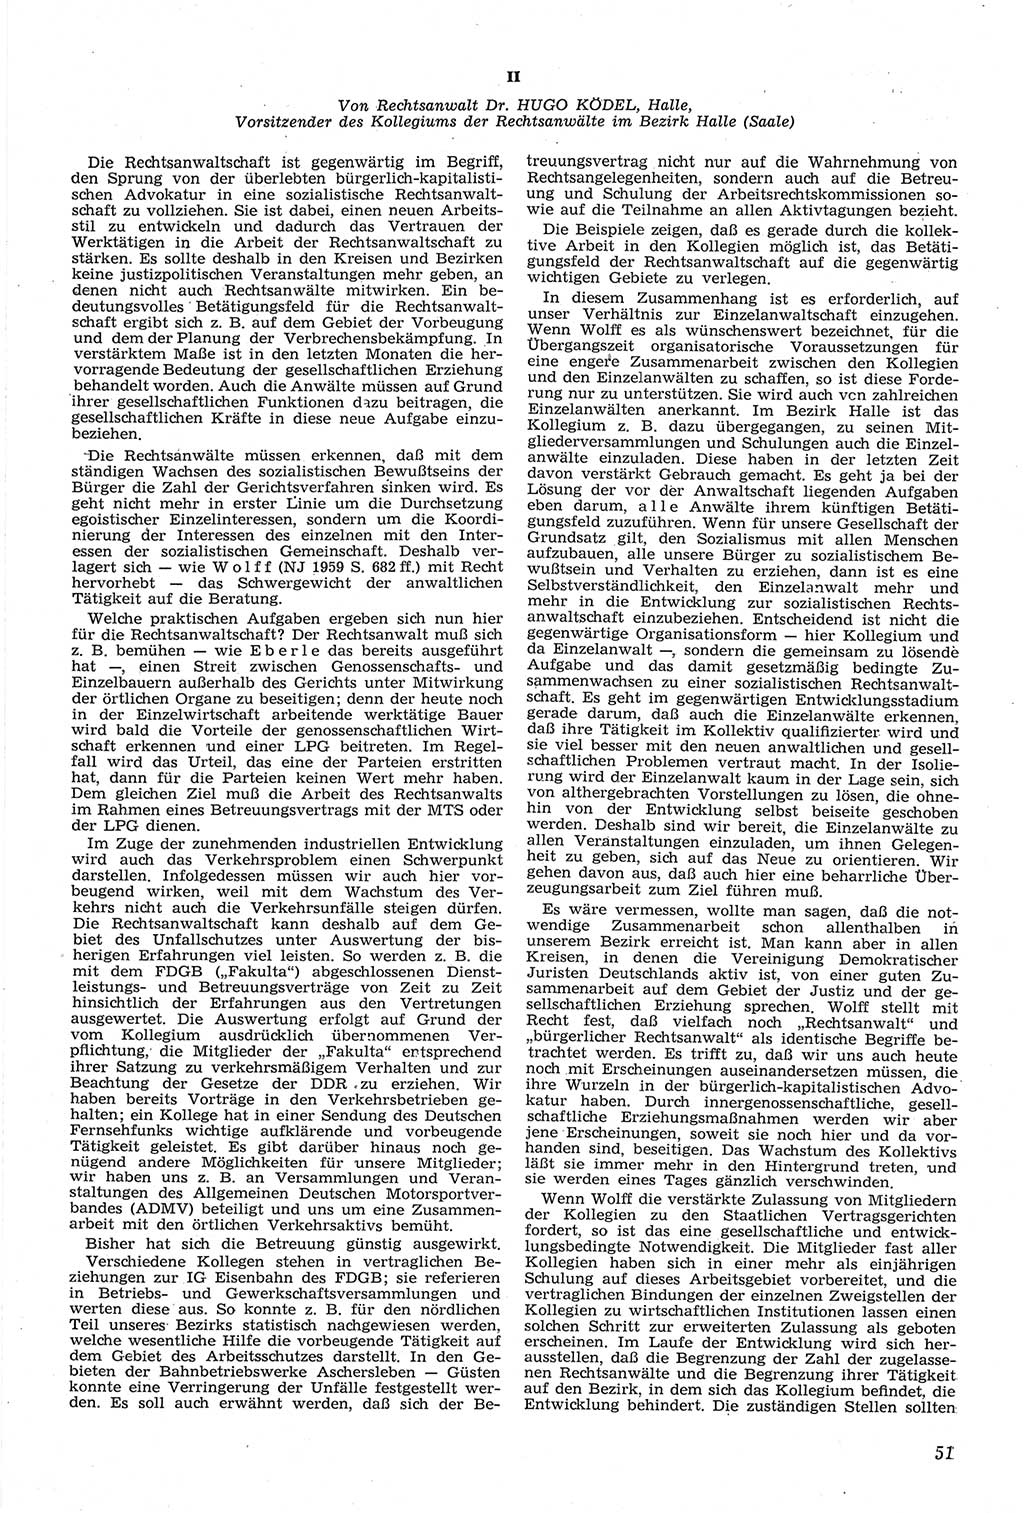 Neue Justiz (NJ), Zeitschrift für Recht und Rechtswissenschaft [Deutsche Demokratische Republik (DDR)], 14. Jahrgang 1960, Seite 51 (NJ DDR 1960, S. 51)